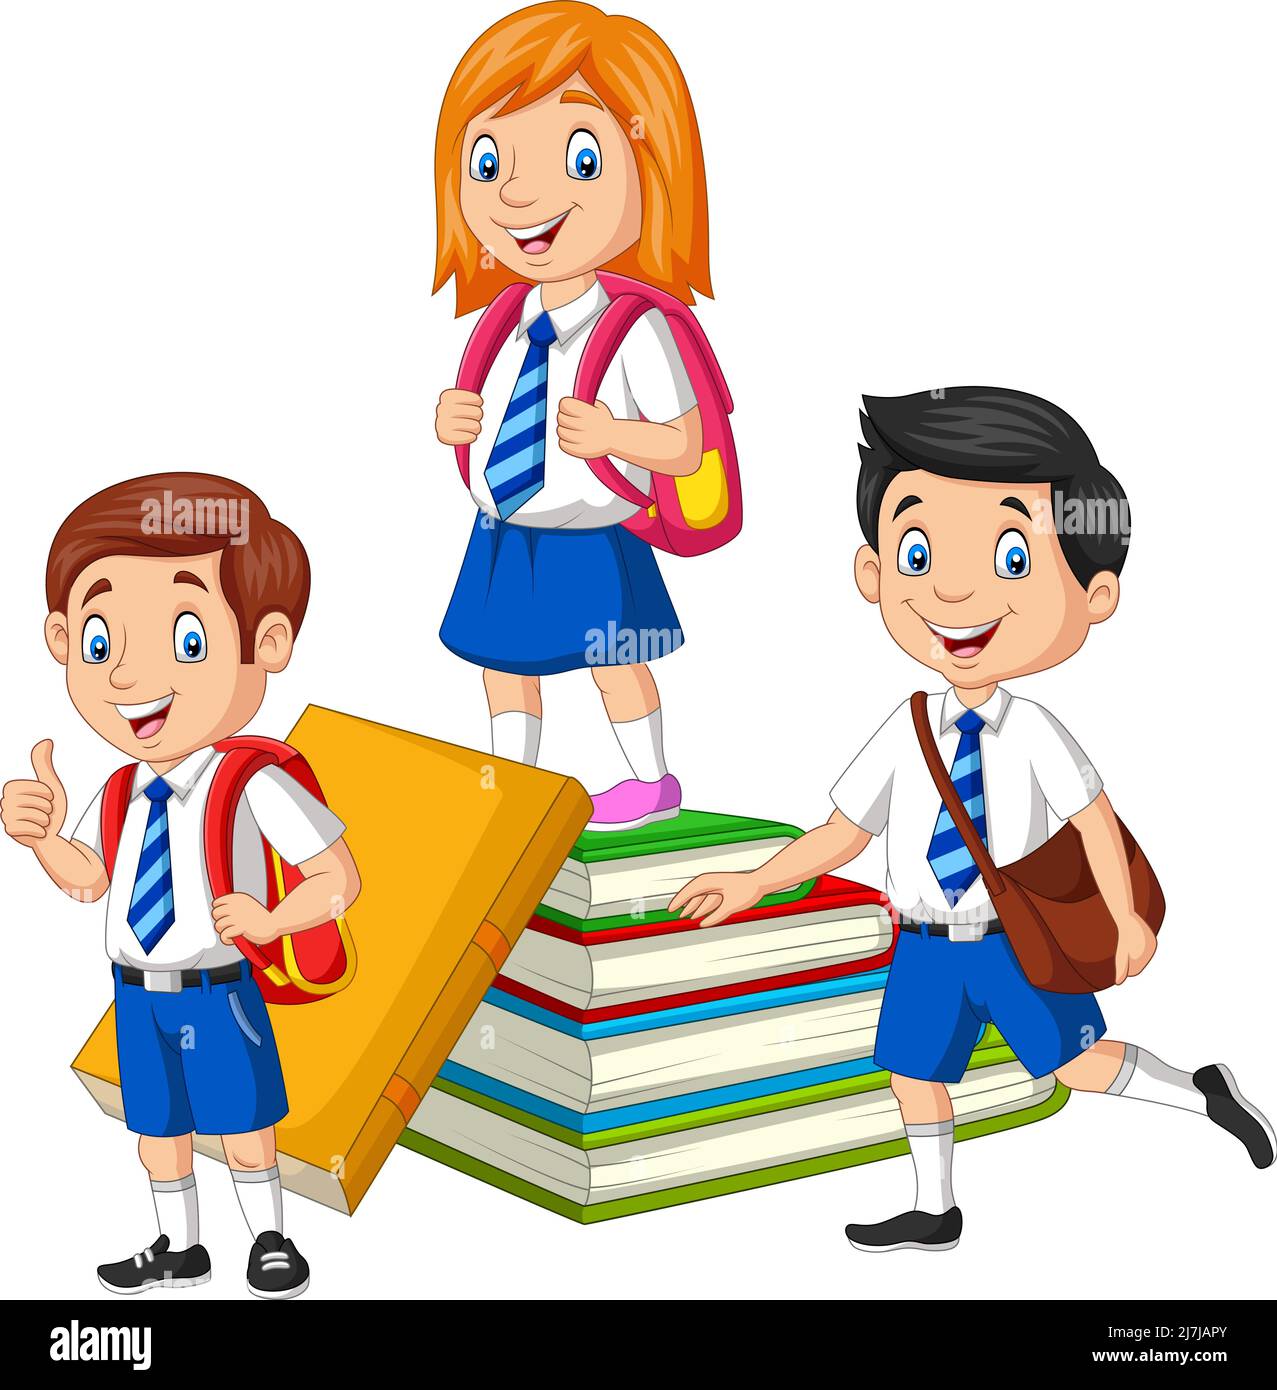 Happy school children with stack of book Stock Vector Image & Art - Alamy